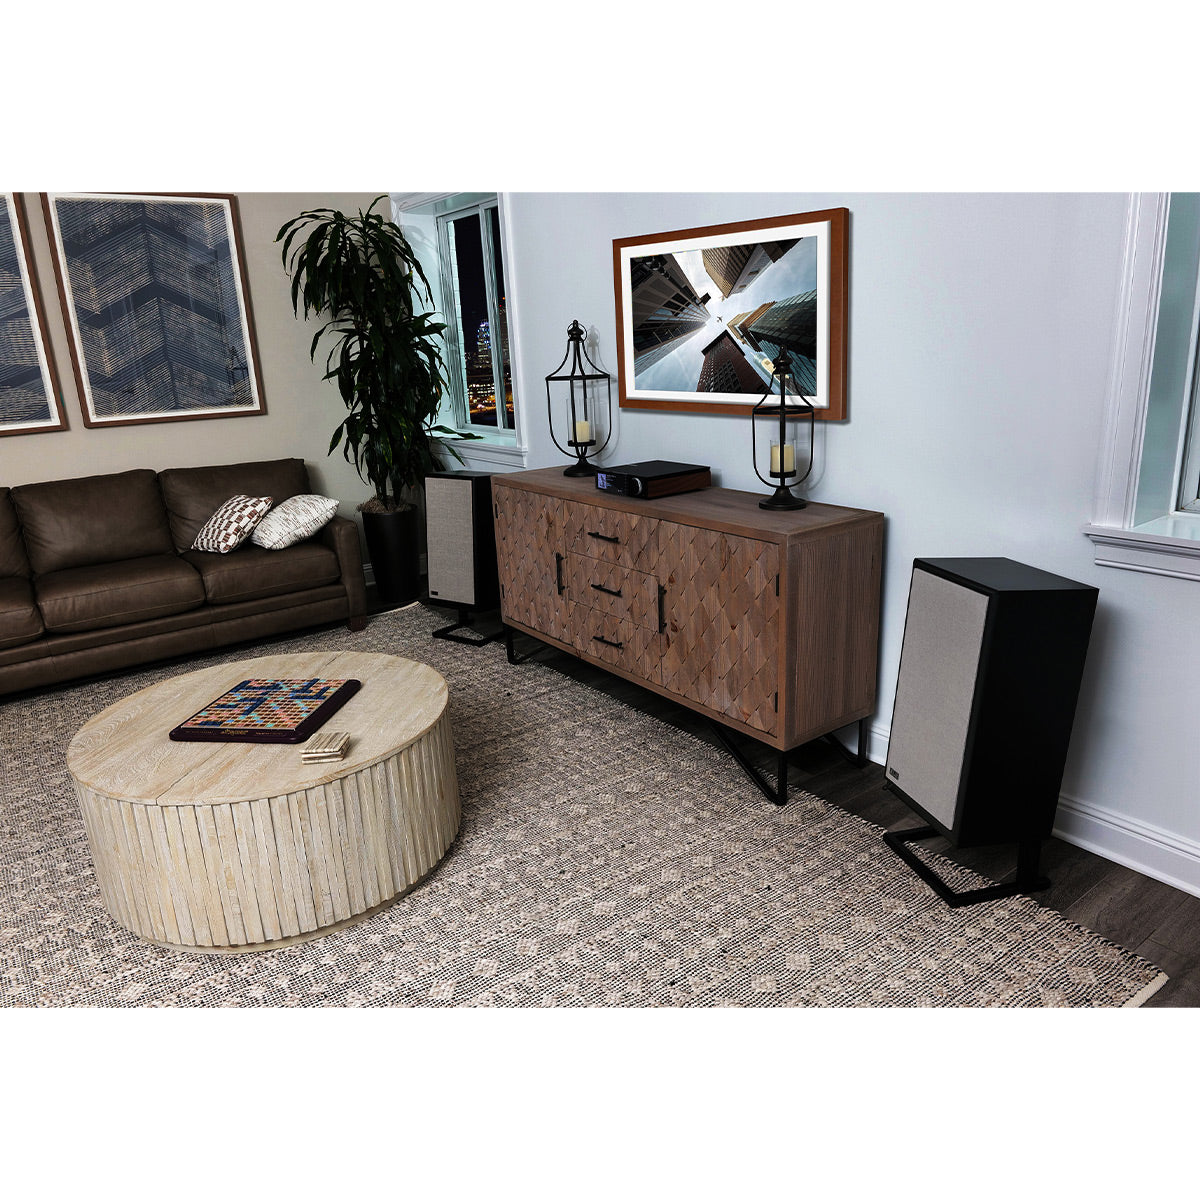 KLH Model Five 3-way 10-inch Acoustic Suspension Floorstanding Speaker - Pair (Nordic Noir)